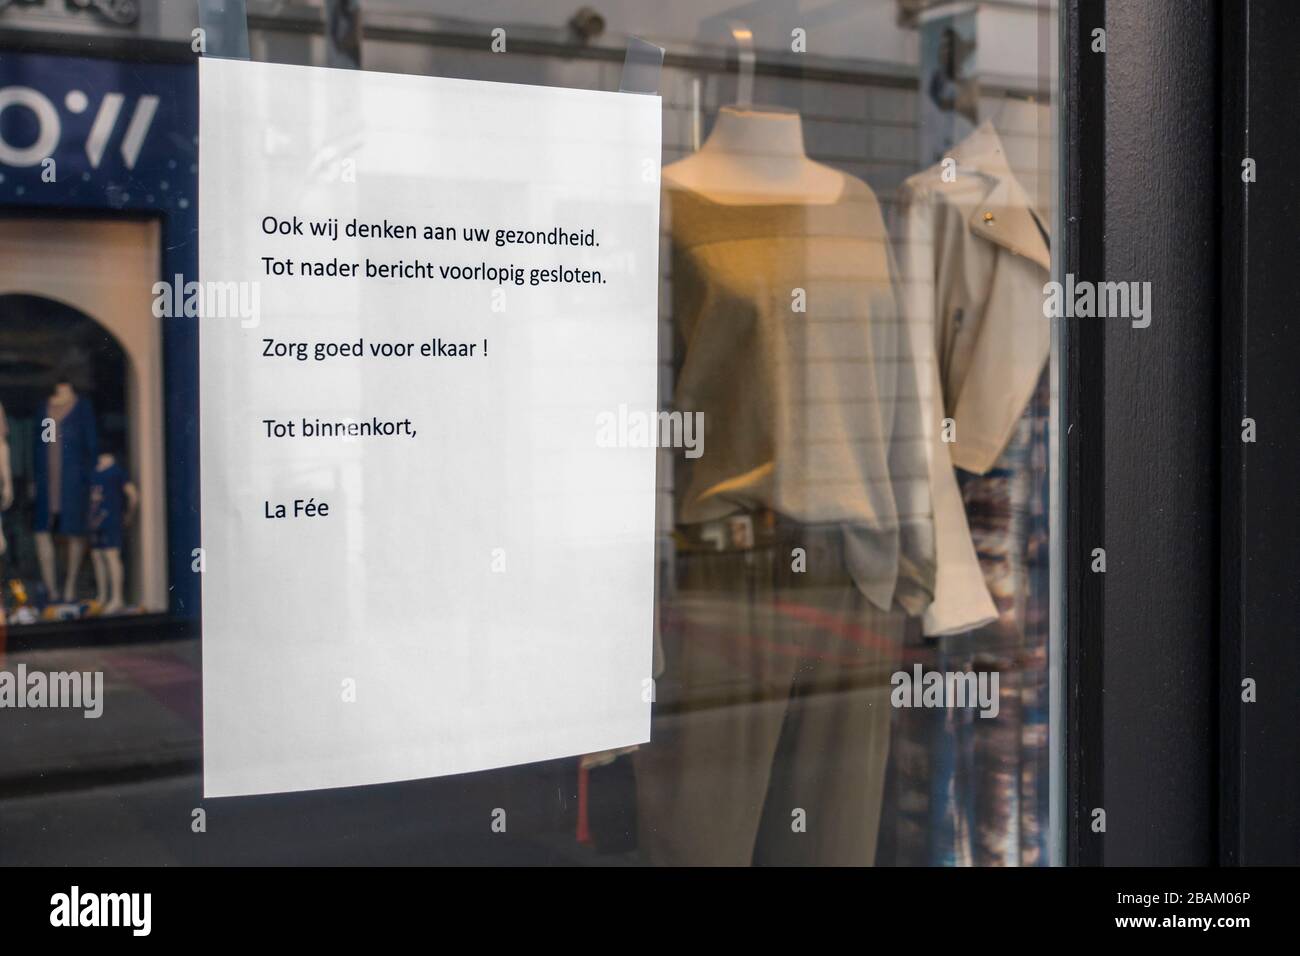 Avis de fermeture de la boutique de vêtements dans la rue commerçante en raison de la COVID-19 2020 / coronavirus / pandémie de virus corona dans la ville de Gand, Belgique Banque D'Images